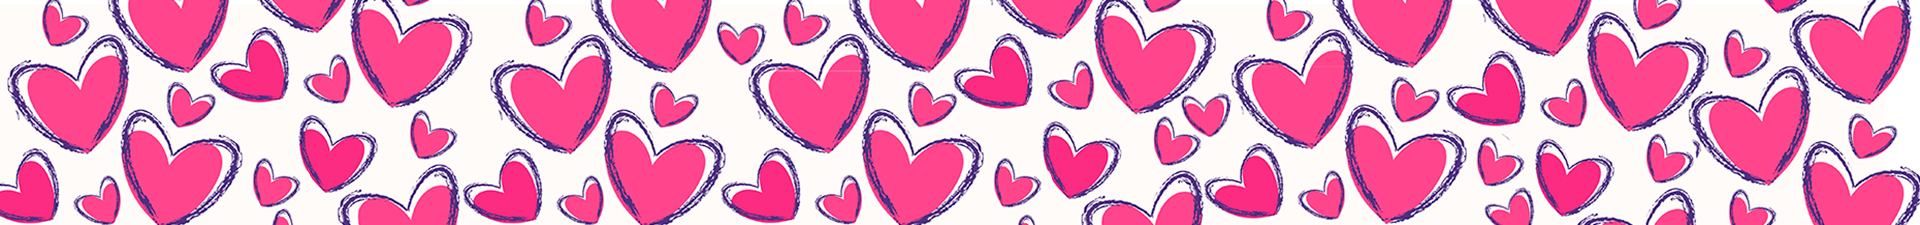 Angrosist de Ziua Îndrăgostiților: ambalaje pentru cadou, plicuri și g